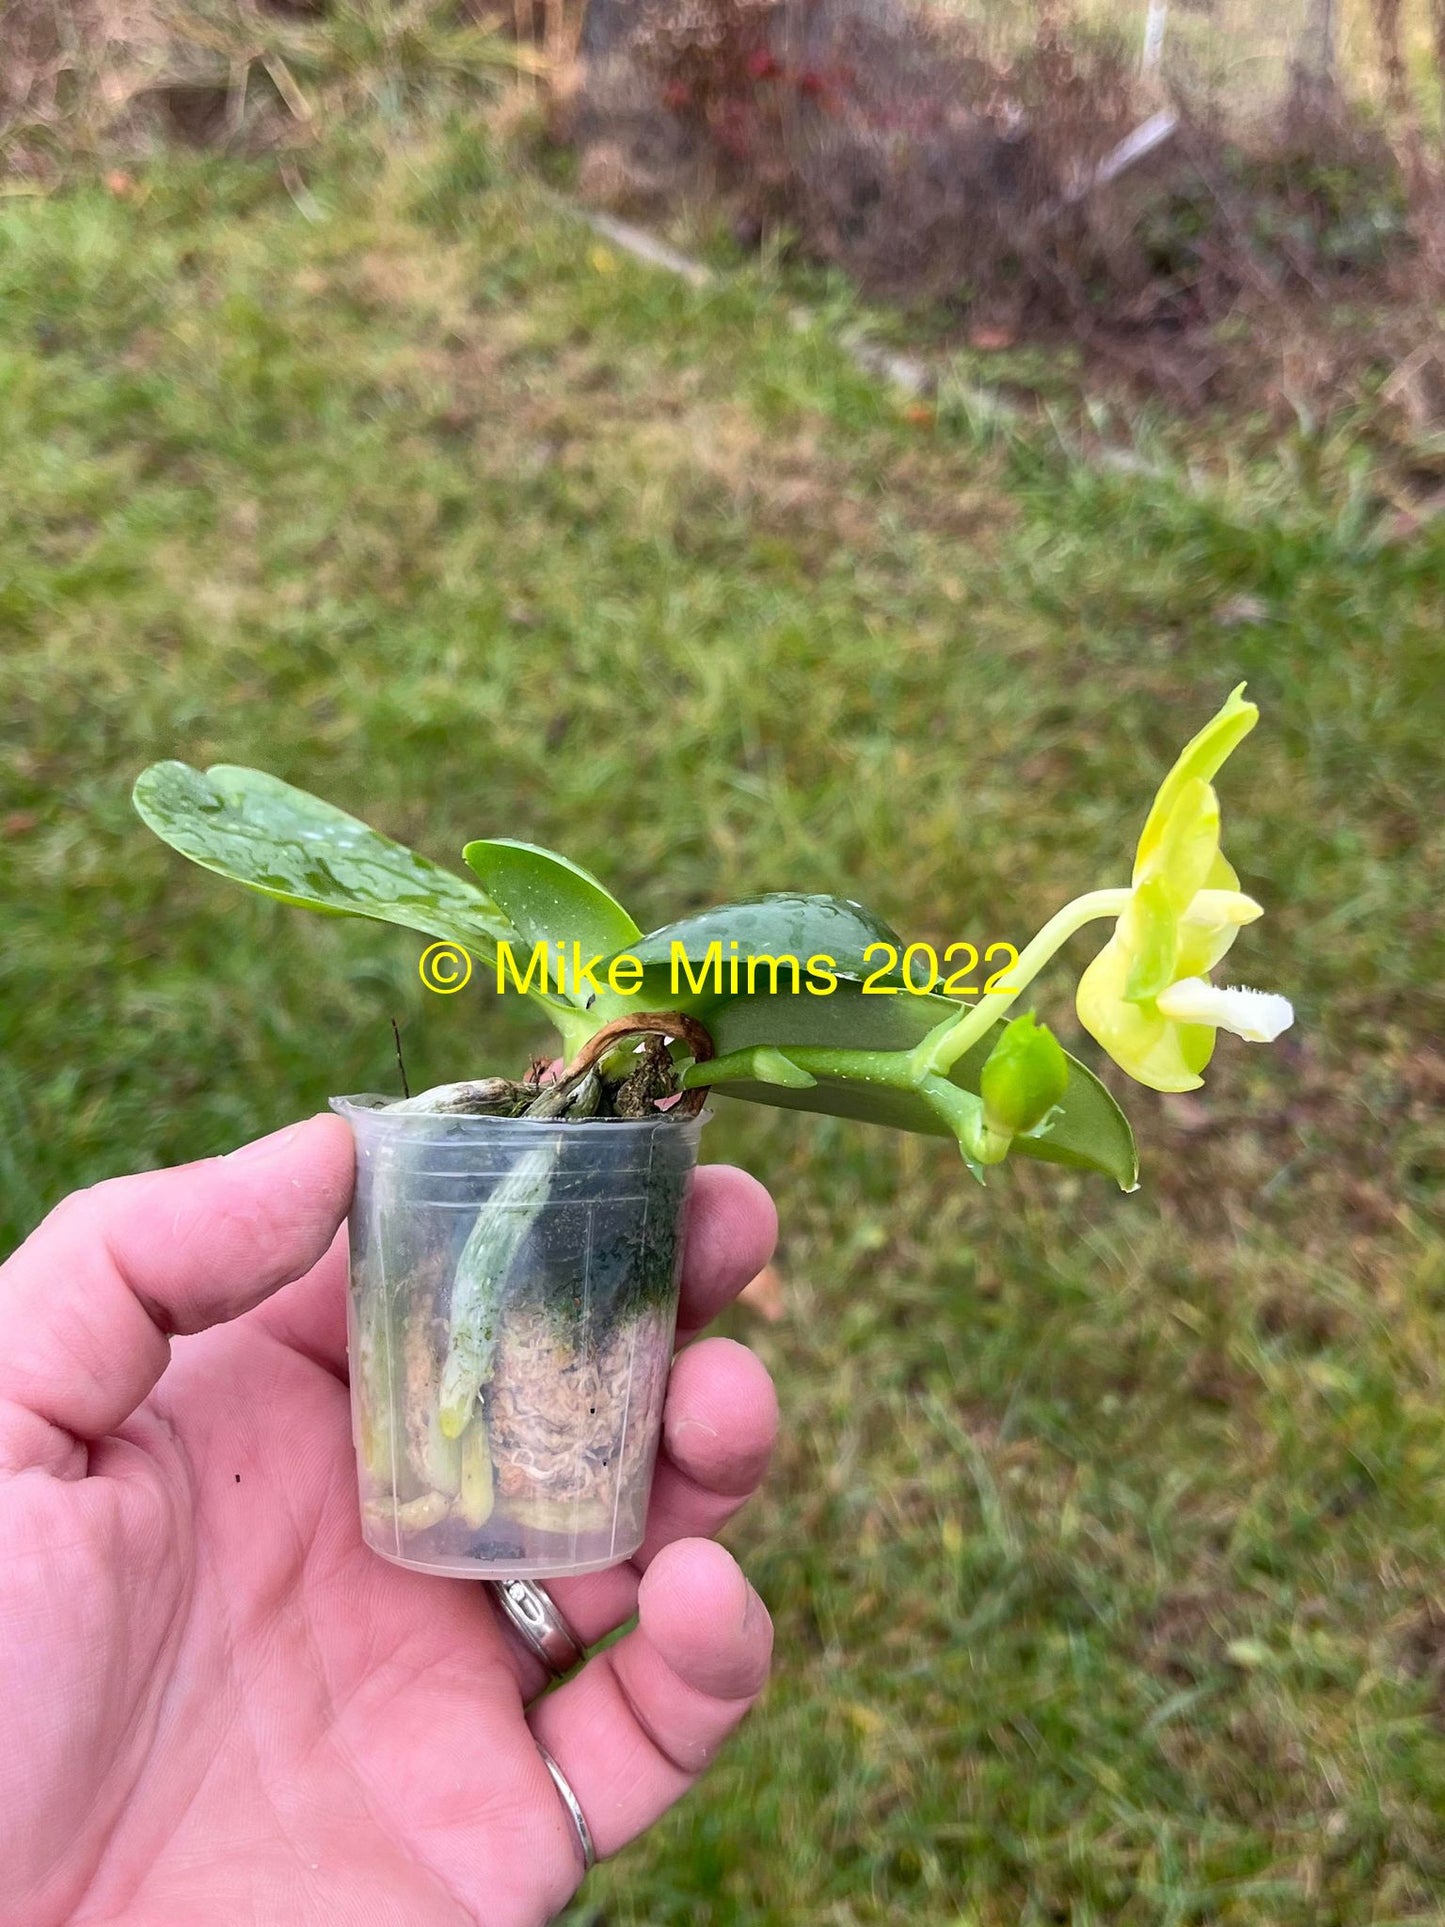 Phalaenopsis Mainshow Golden QM380 Seedlings